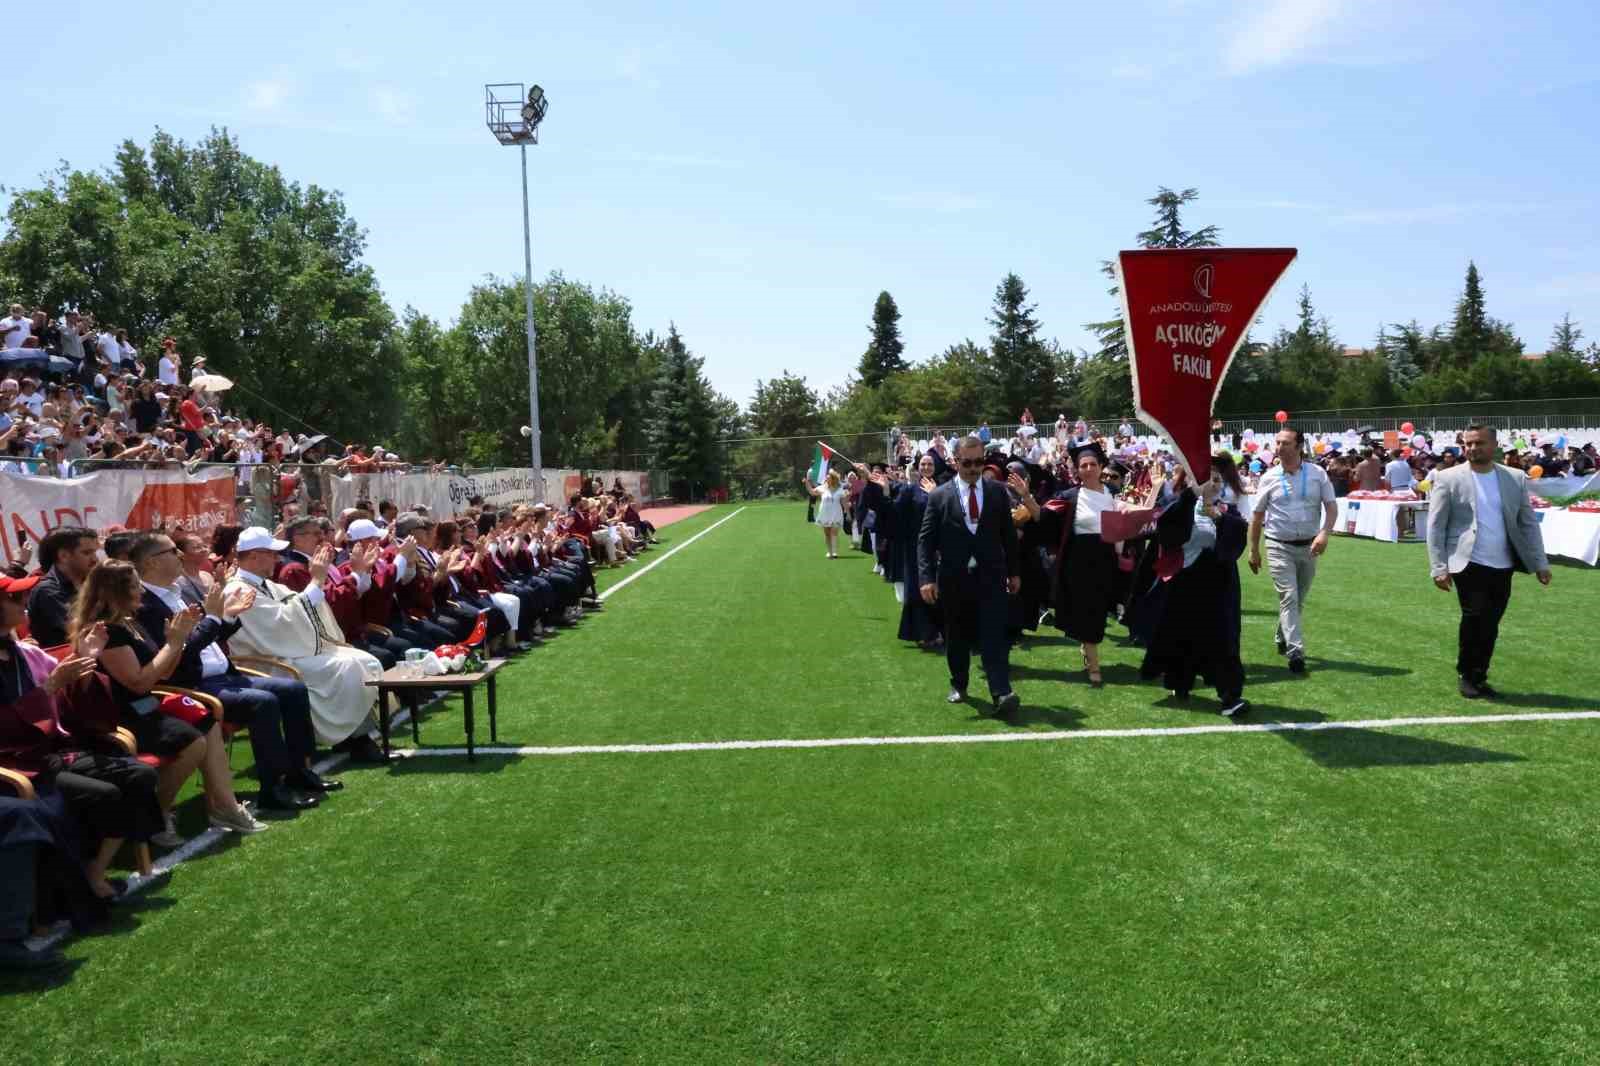 7’den 70’e mezuniyet sevinci yaşayan Anadolu Üniversitesi öğrencileri kep attı